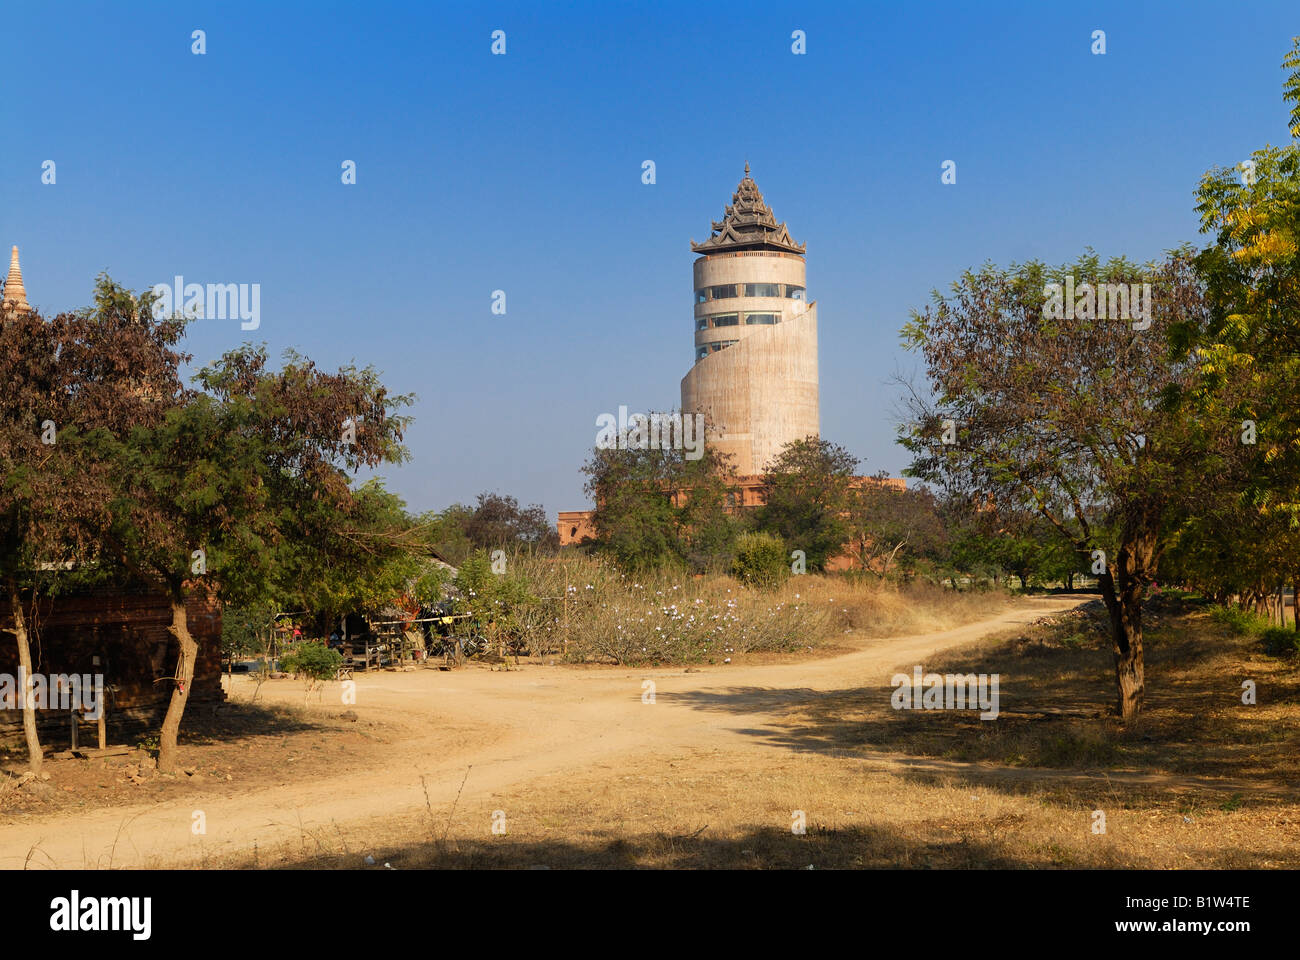 NAN MYINT Turm, hässliche Aussichtsturm erbaut von der MILITÄRREGIERUNG, BAGAN PAGAN, MYANMAR BURMA BIRMA, Asien Stockfoto